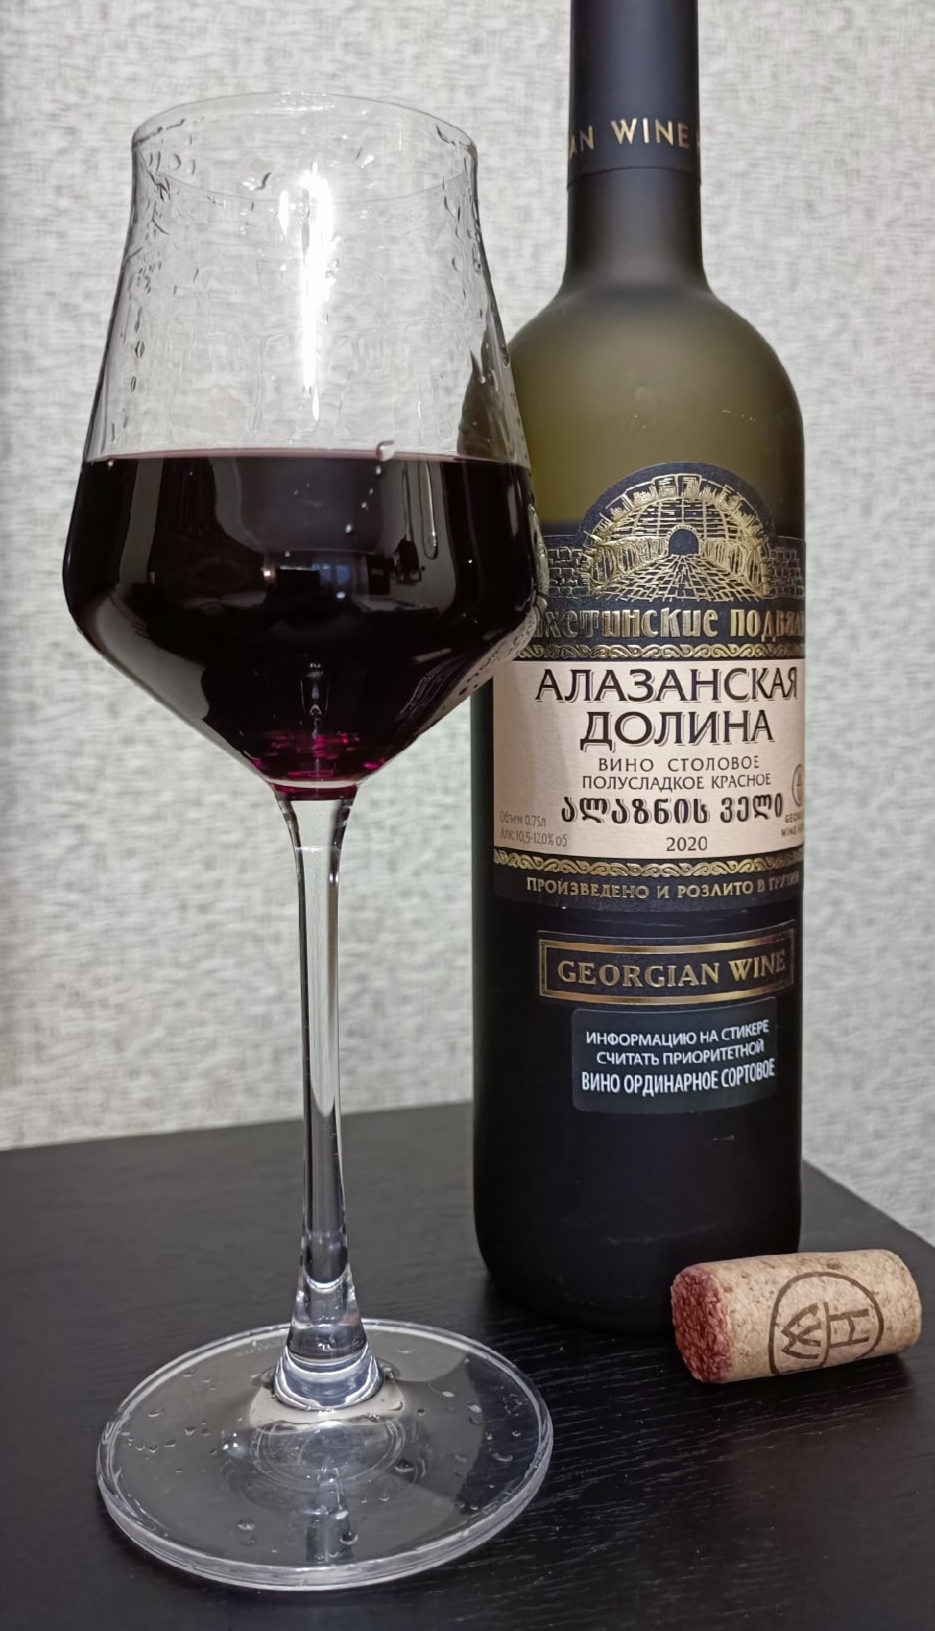 Алазанская долина вино полусладкое. Вино Алазанская Долина столовое красное полусладкое. Аланская Долина домашнее красное вино. Имерули вино грузинское. Грузинское домашнее вино.